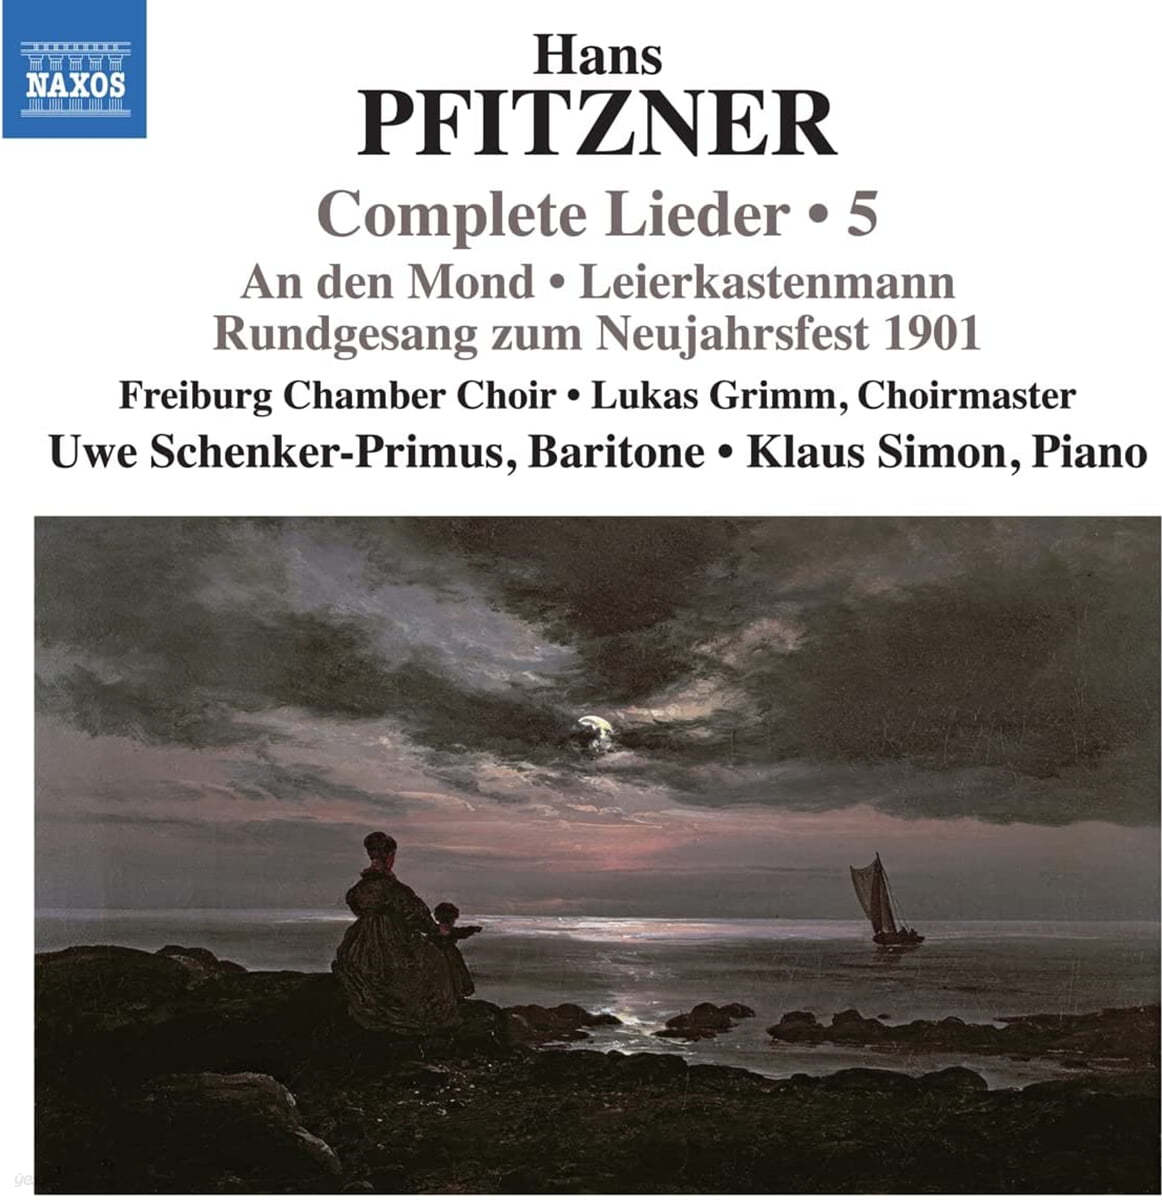 Uwe Schenker-Primus / Klaus Simon 한스 피츠너: 가곡 전곡 5집 (Hans Pfitzner: Complete Lieder Vol. 5) 